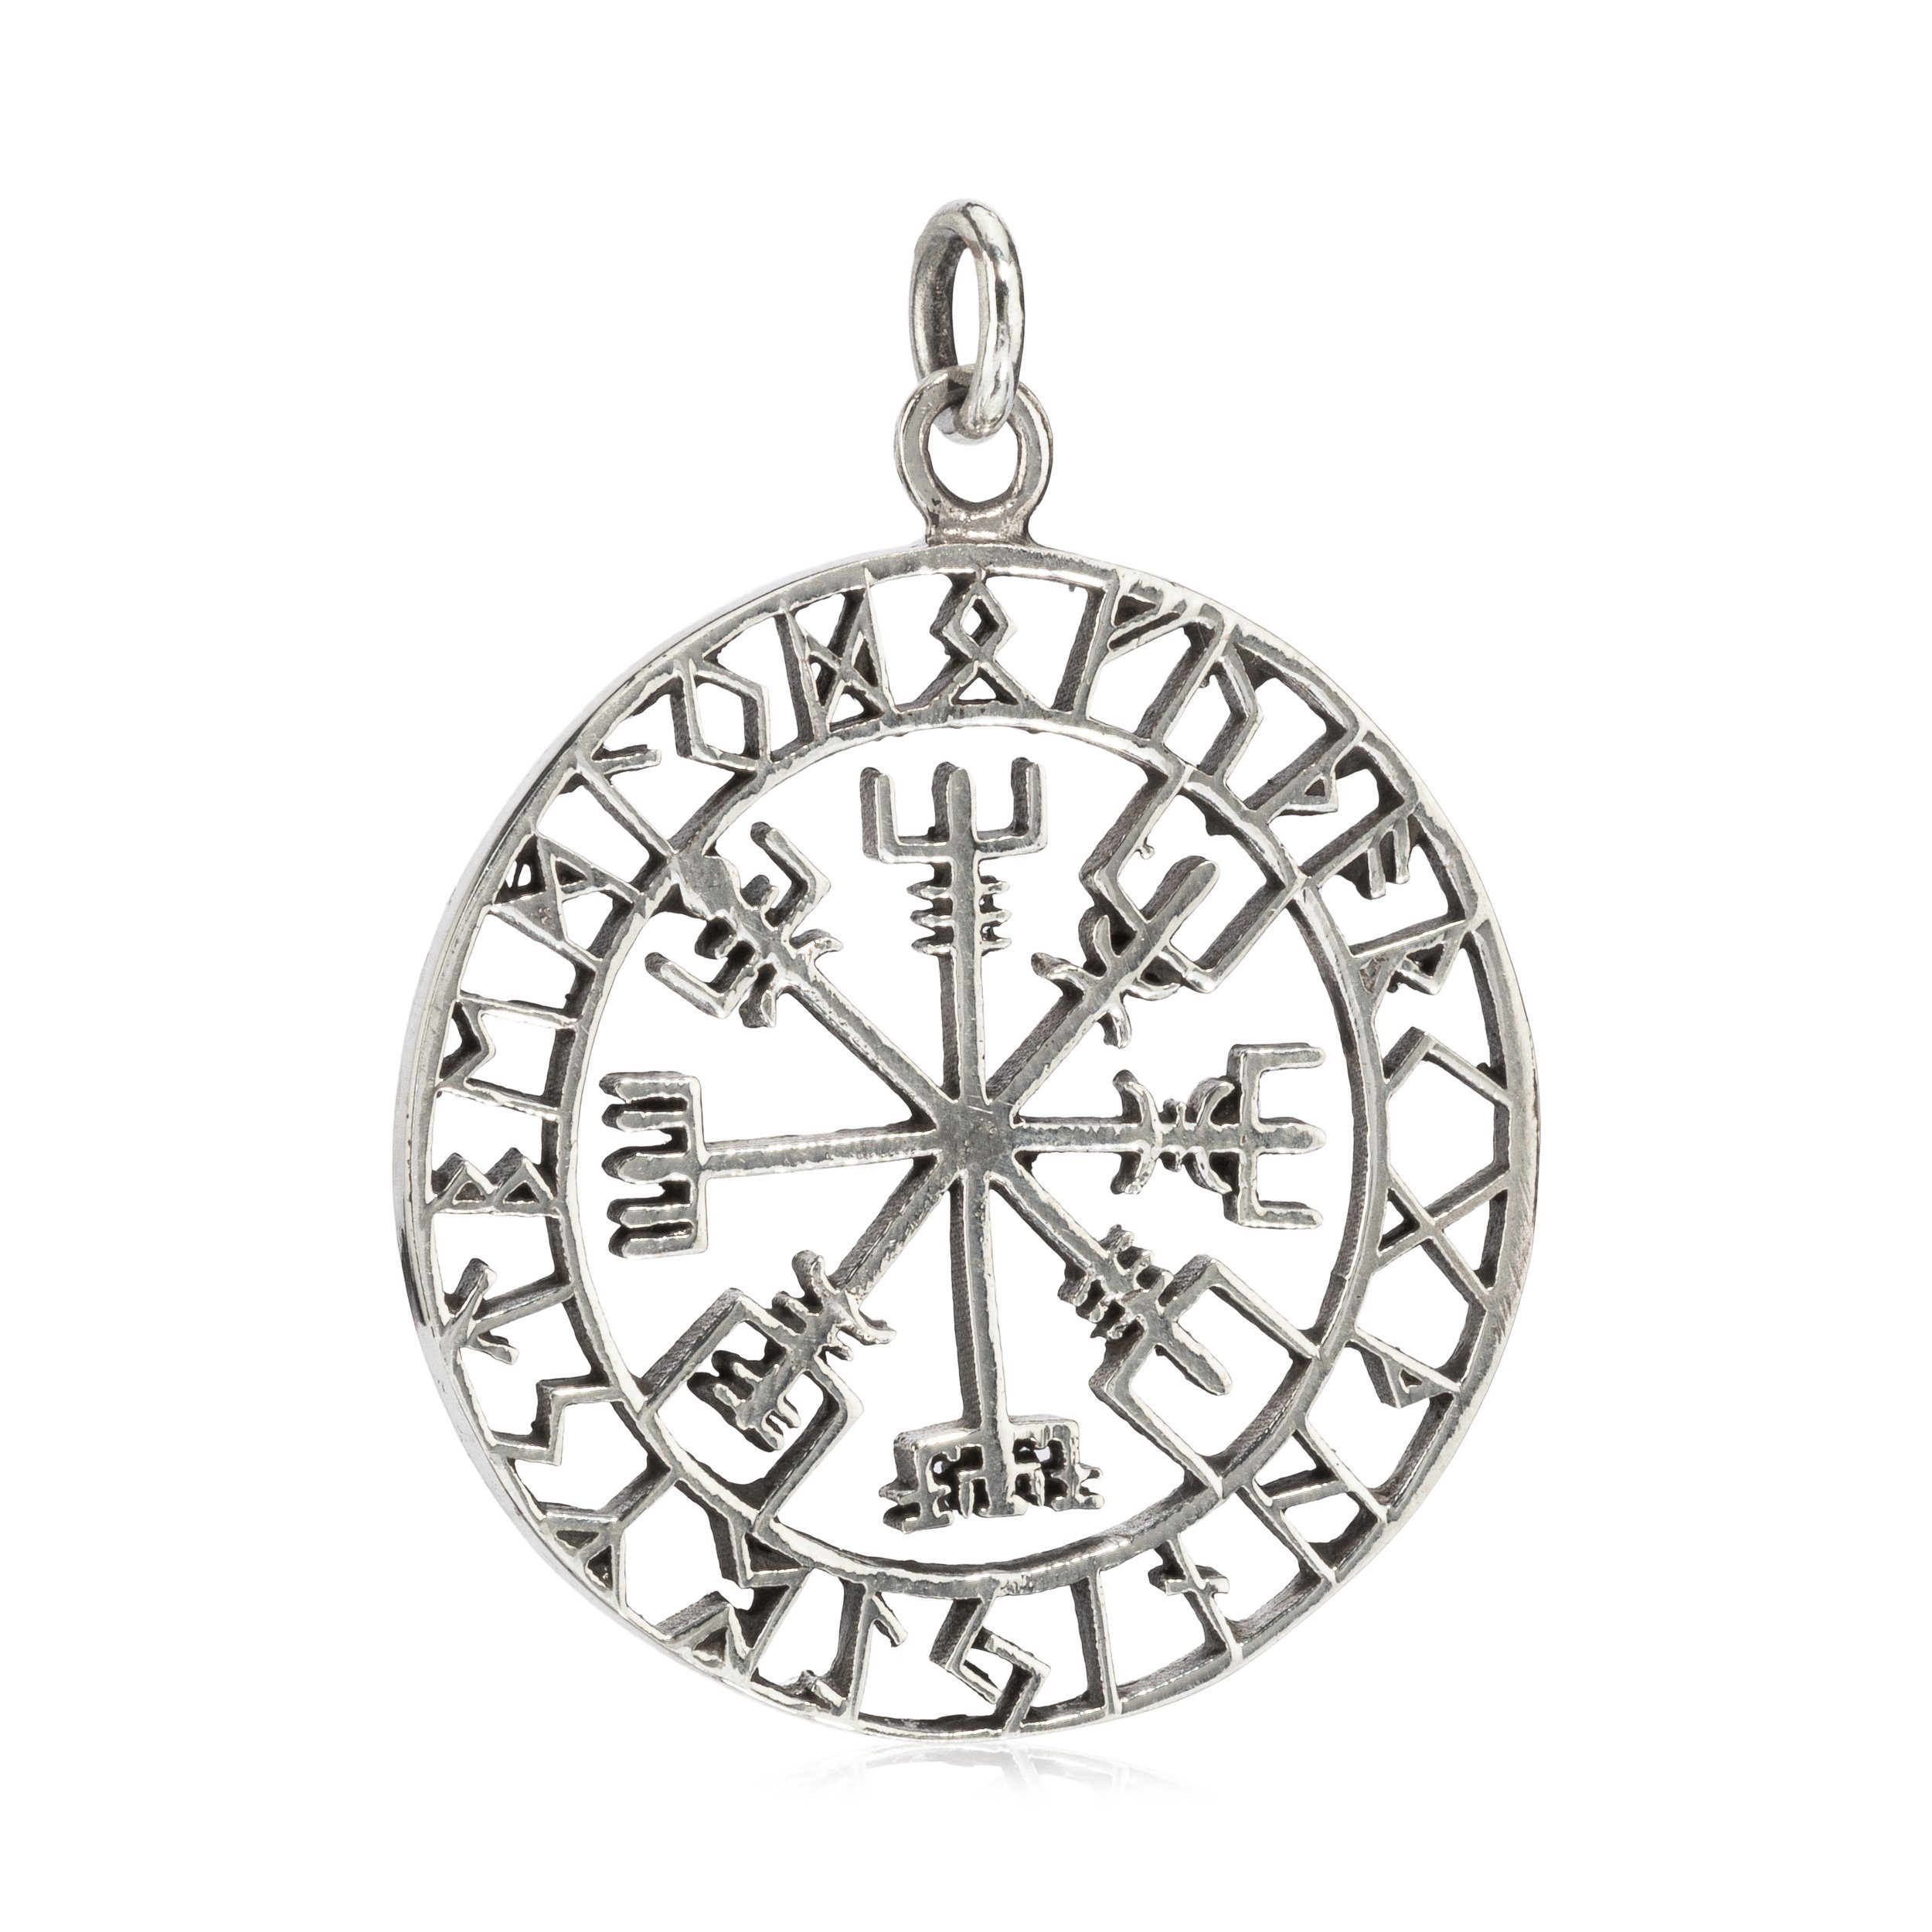 NKlaus Kettenanhänger Kettenanhänger Vegvisir Runen Amulett 3,6cm Silbe, 925 Sterling Silber Silberschmuck für Damen